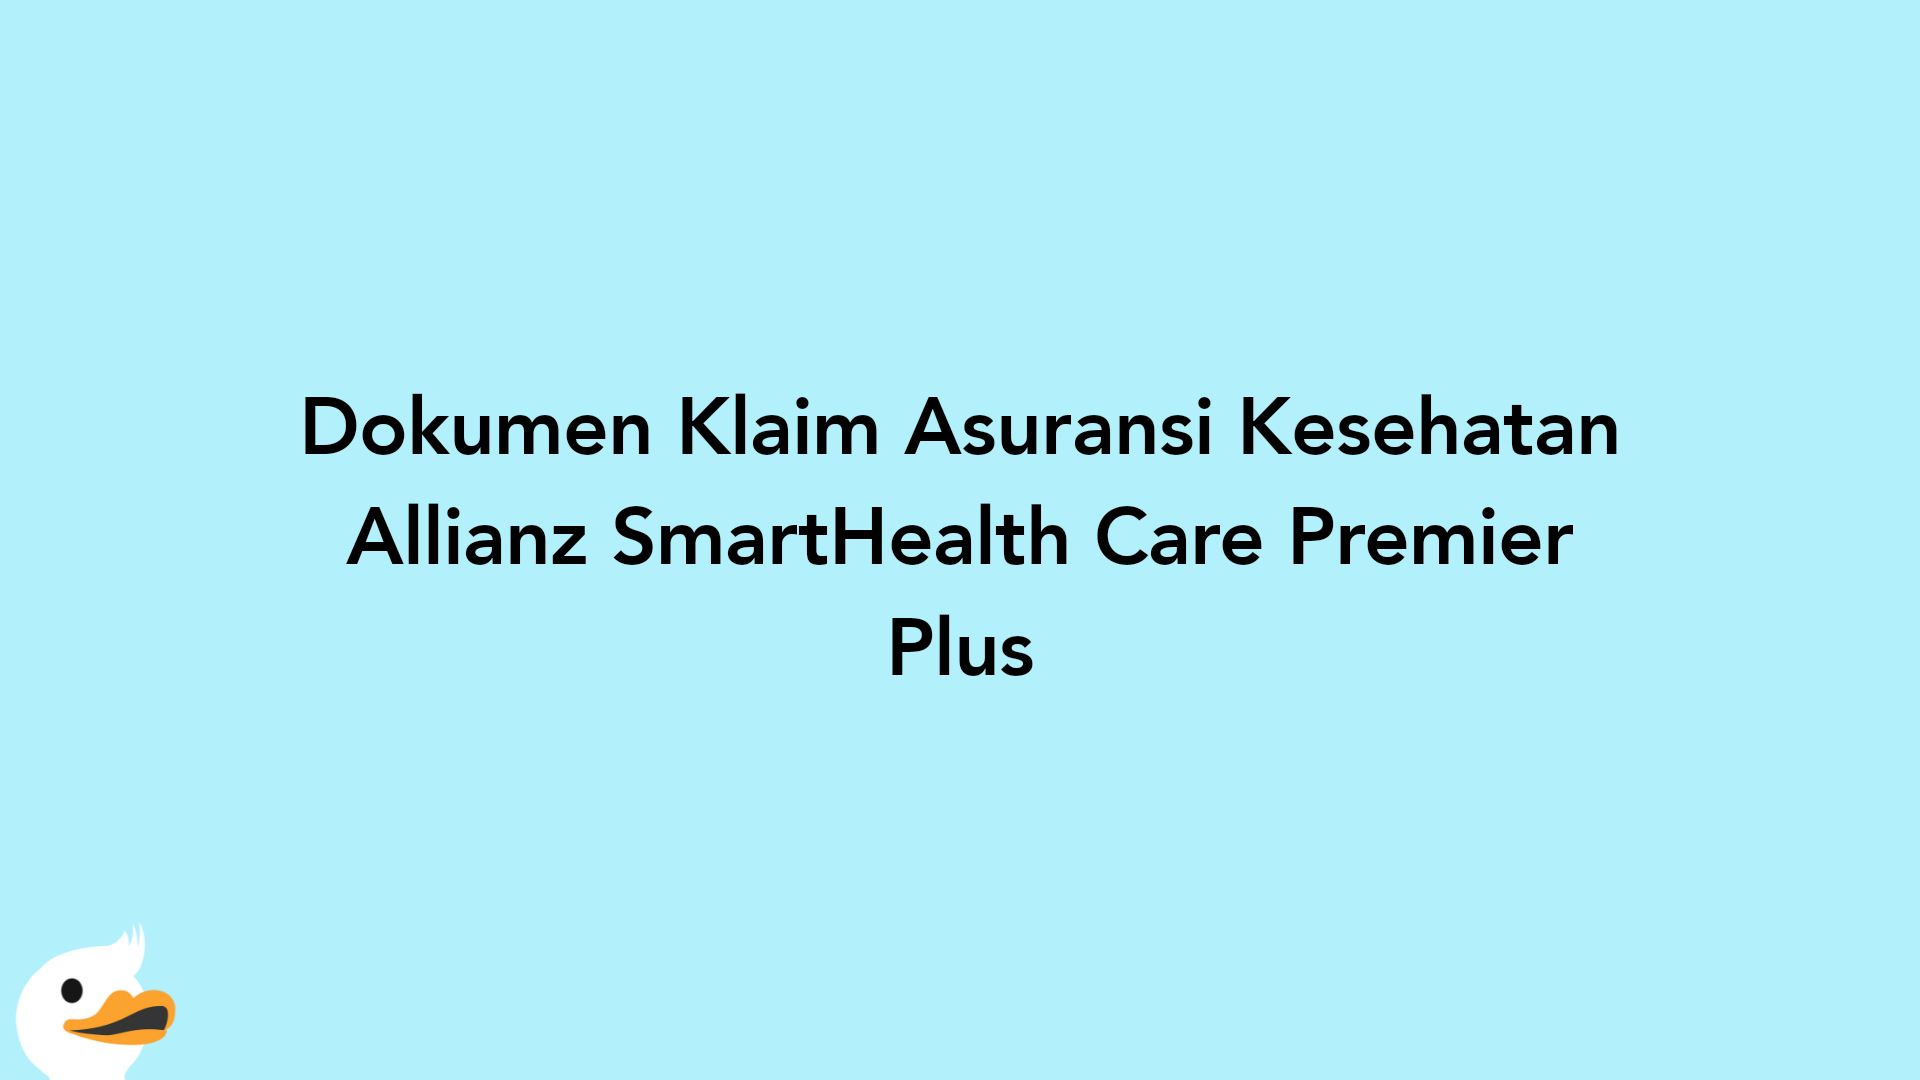 Dokumen Klaim Asuransi Kesehatan Allianz SmartHealth Care Premier Plus